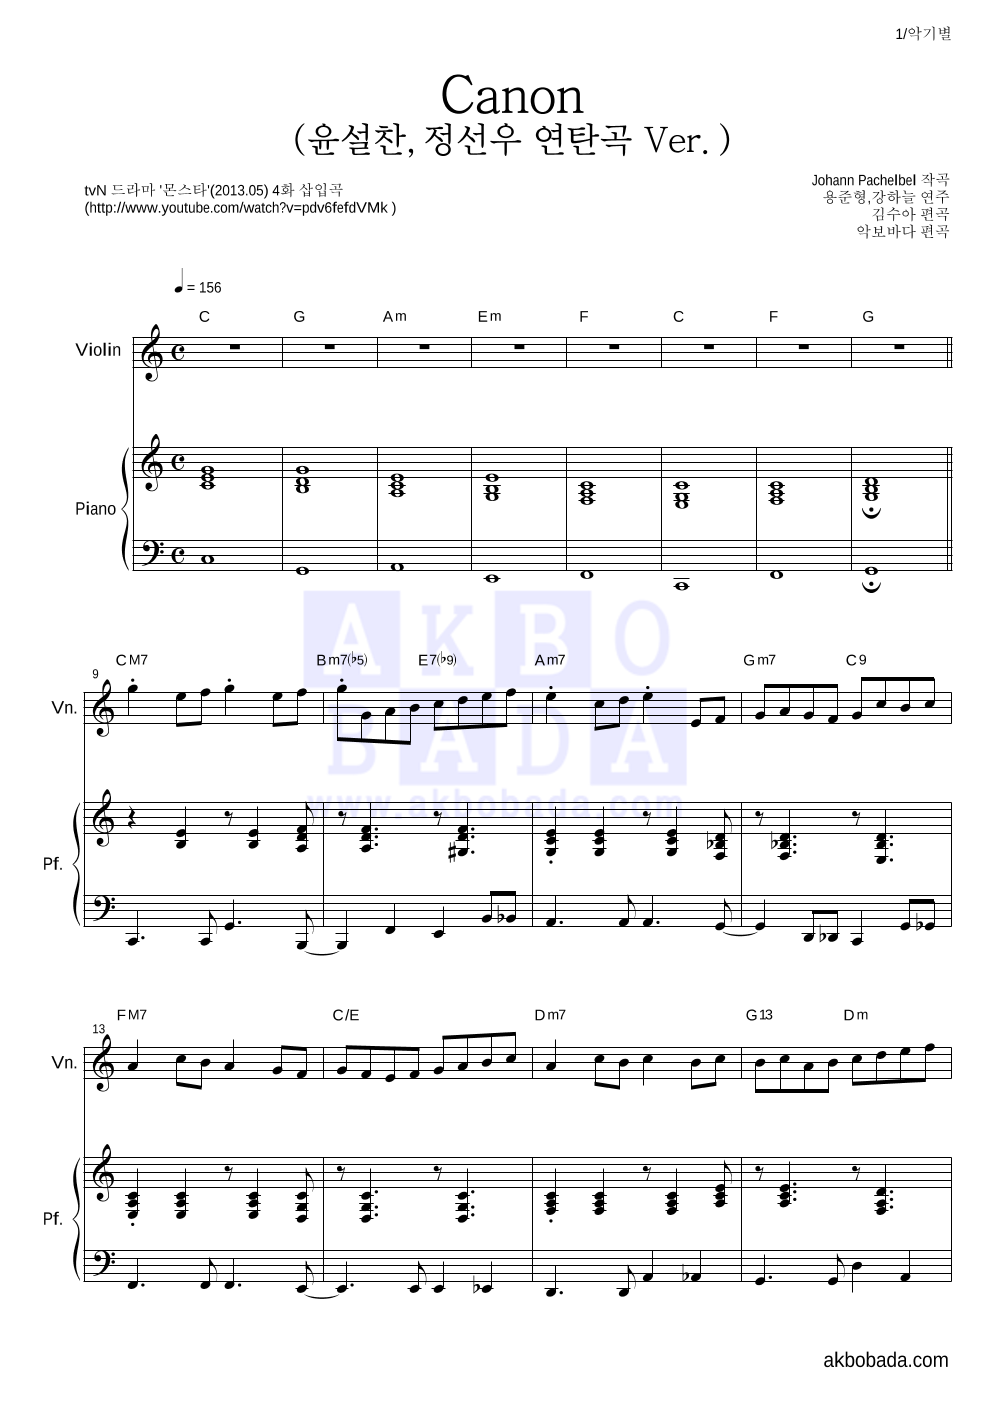 용준형,강하늘 - Canon (윤설찬,정선우 연탄곡 Ver.) 바이올린&피아노 악보 